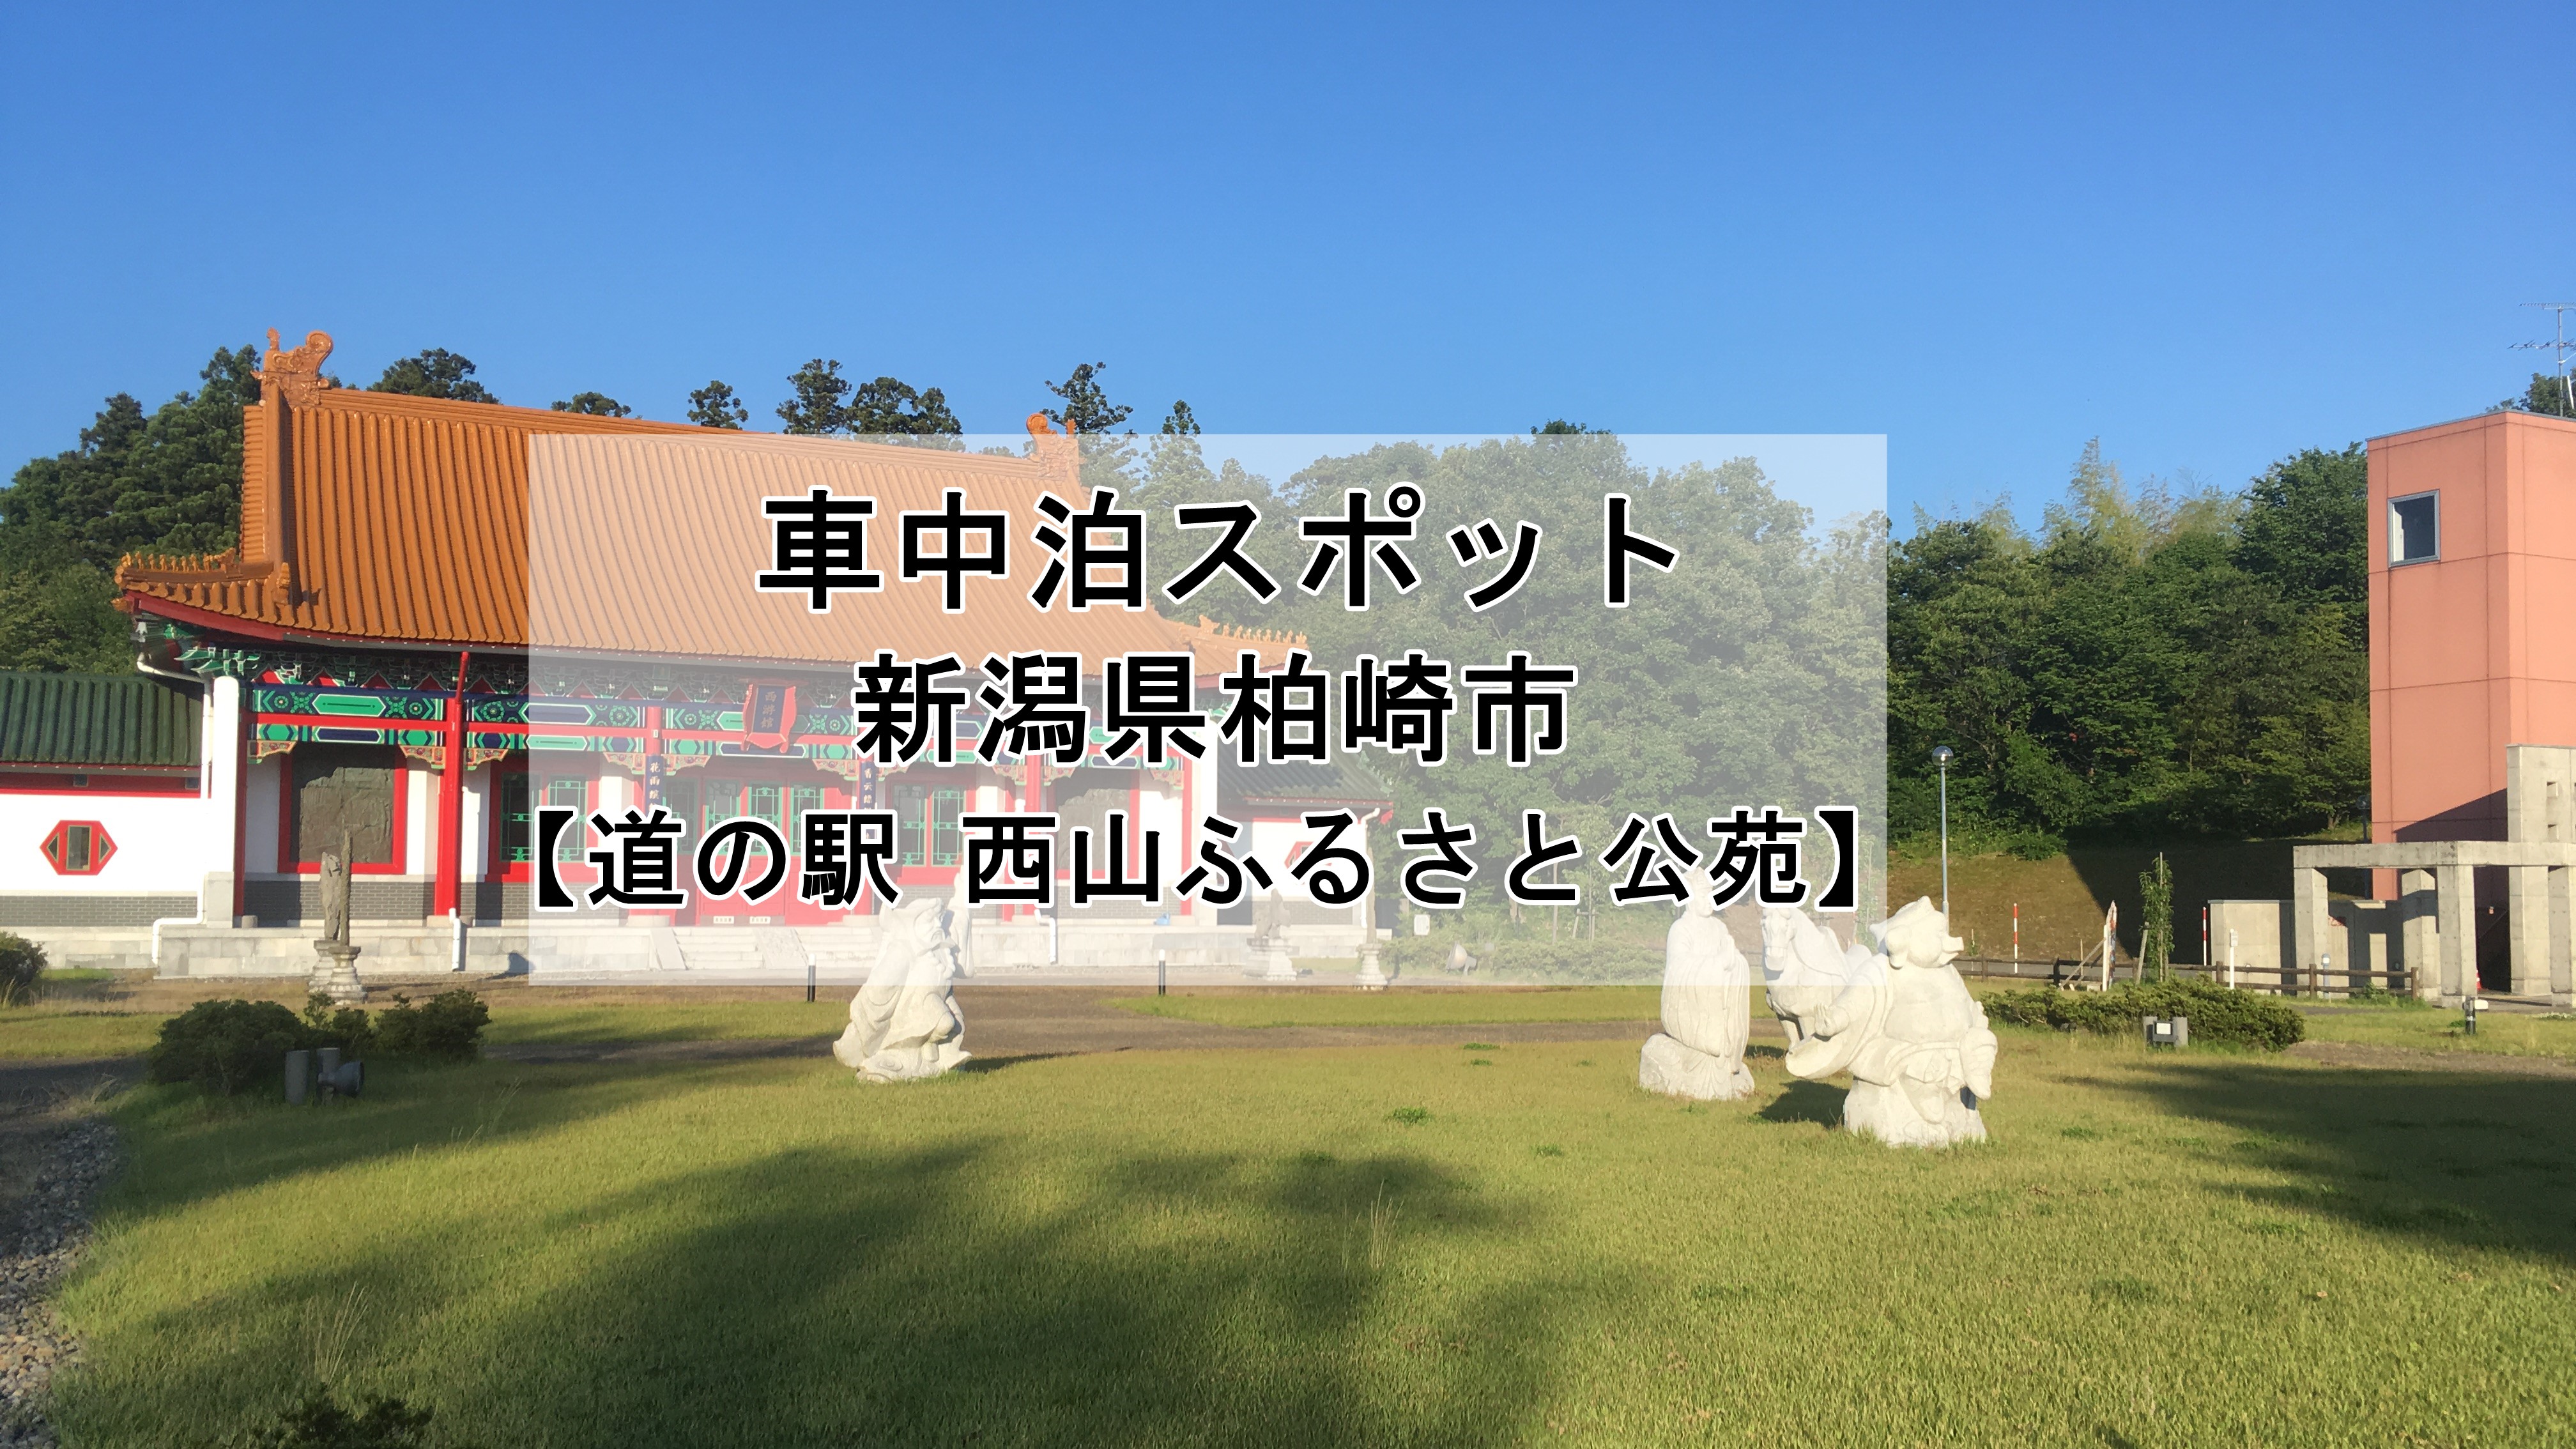 新潟県 道の駅 西山ふるさと公苑 での車中泊はオススメしません 車中泊初心者向けバンライフブログ